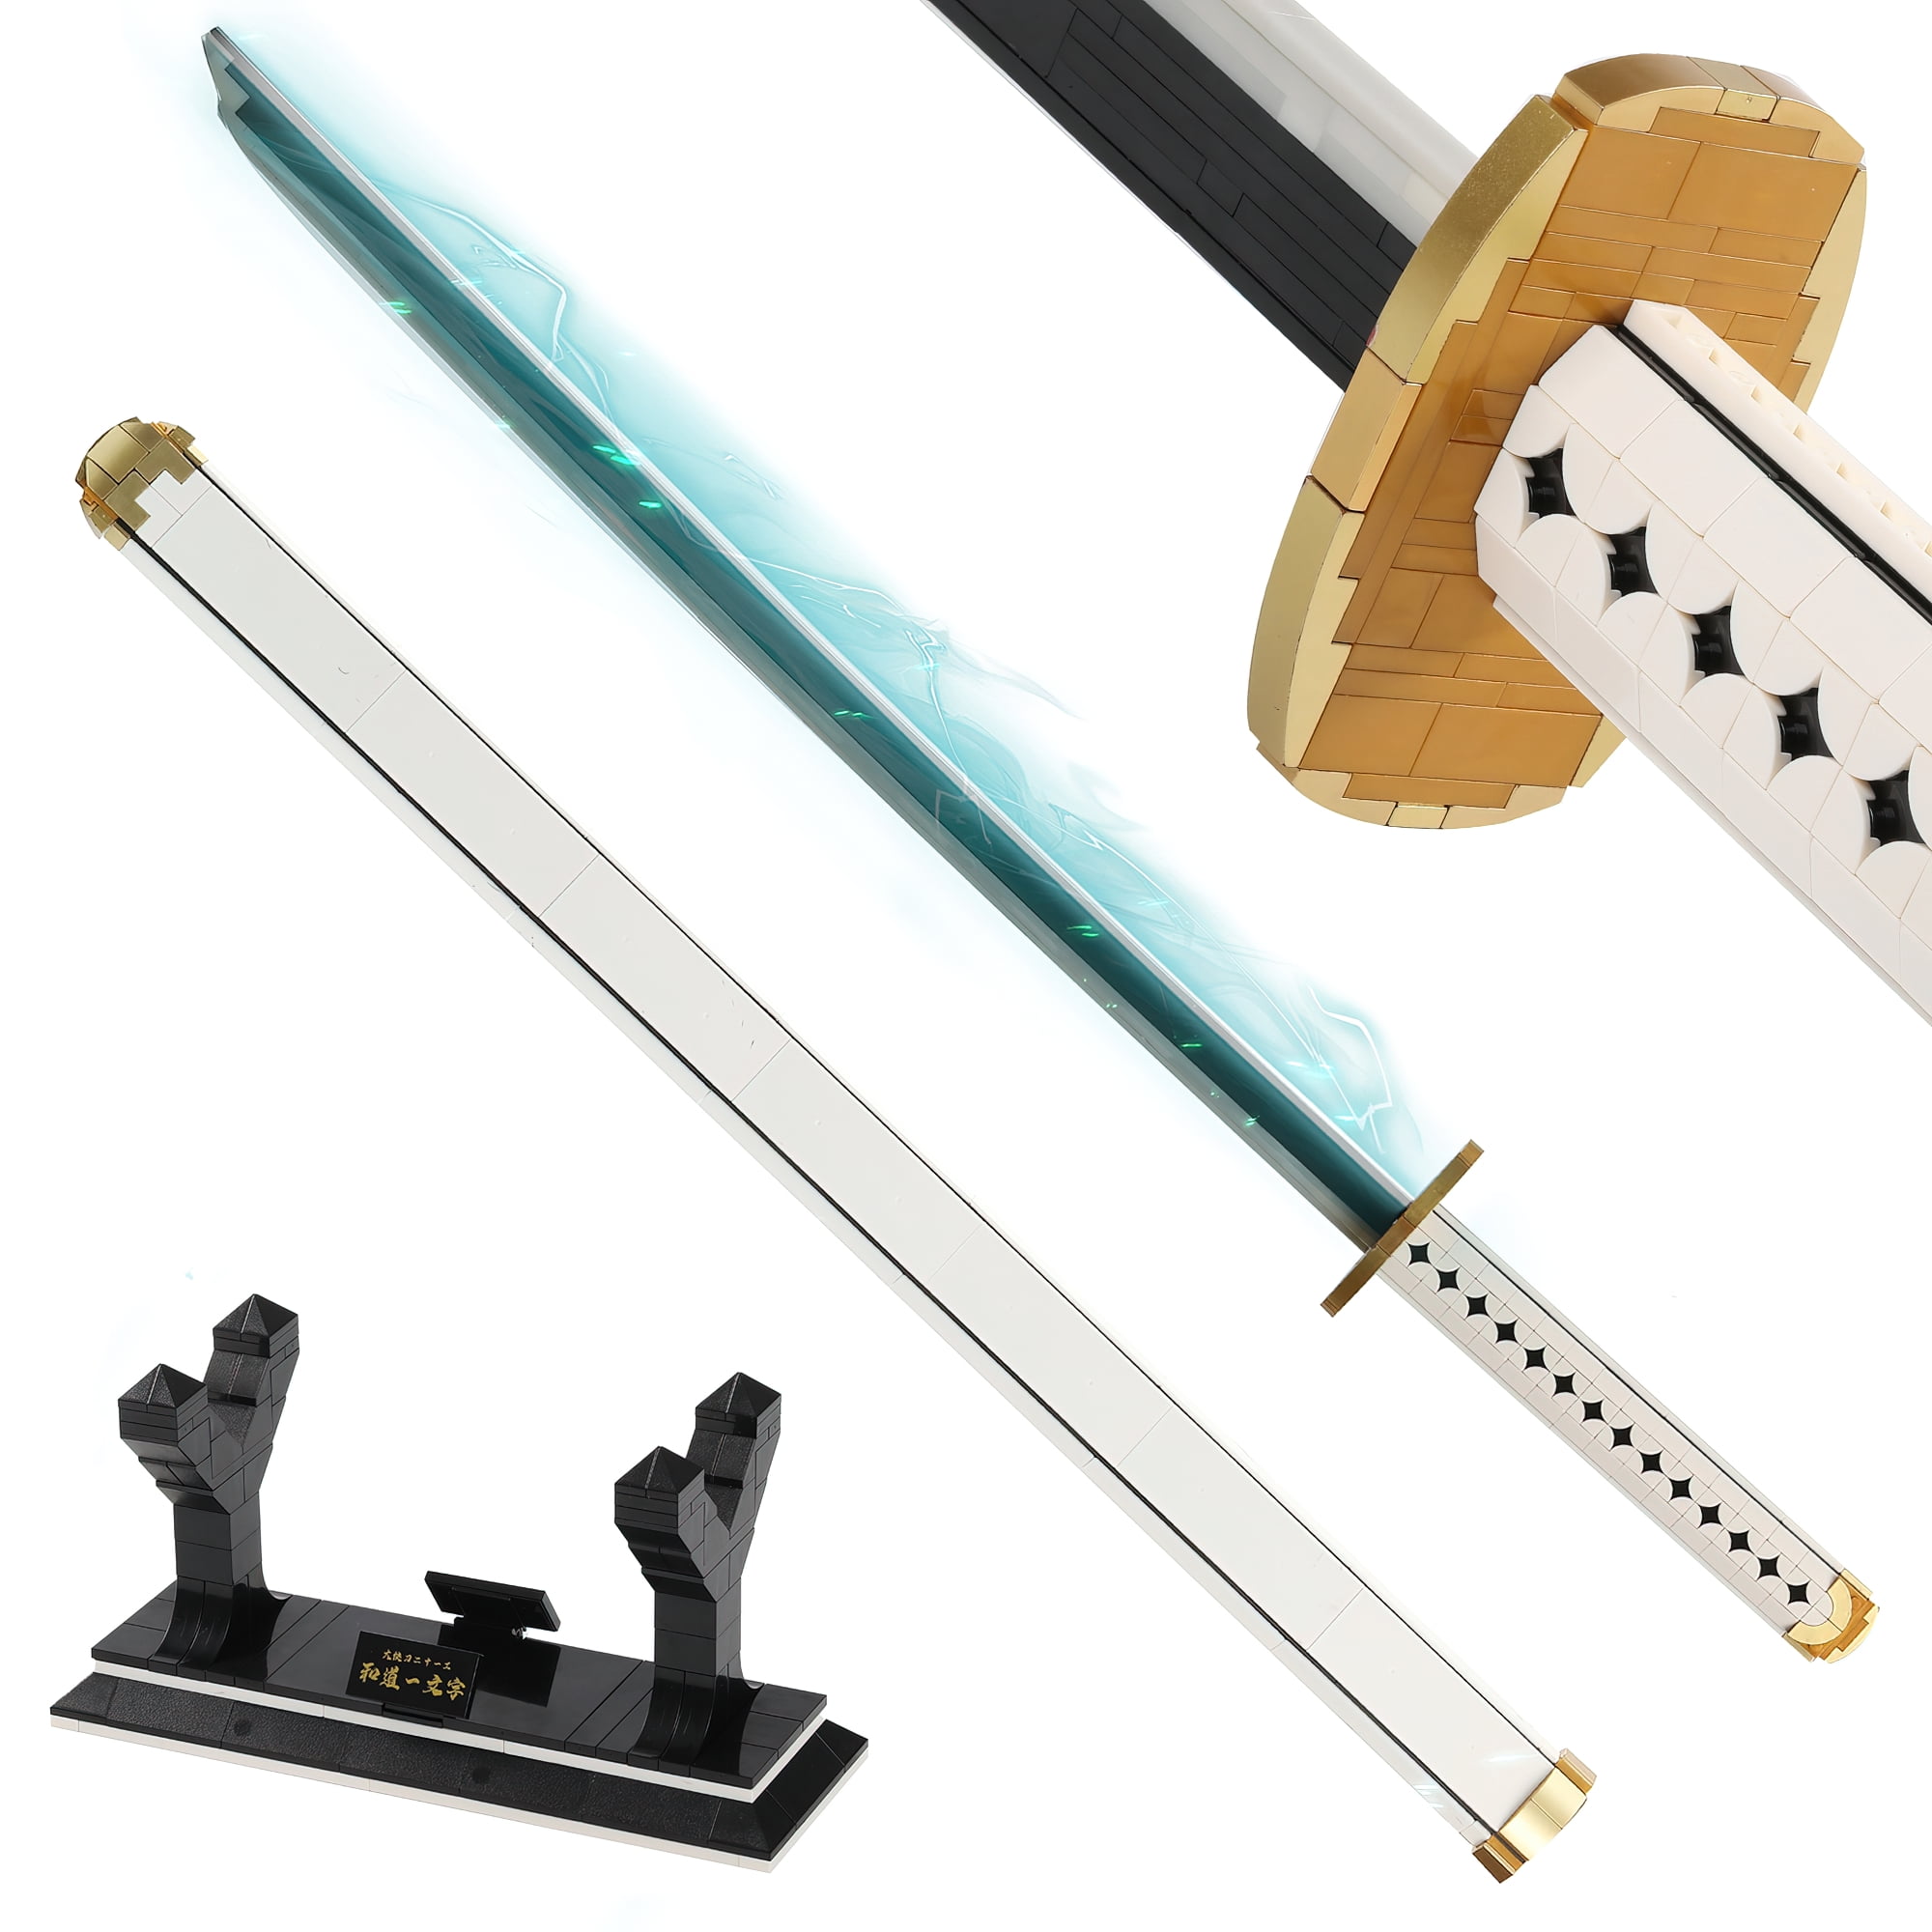  Demon Slayer Swords Building Set, 39in Zenitsu Sword